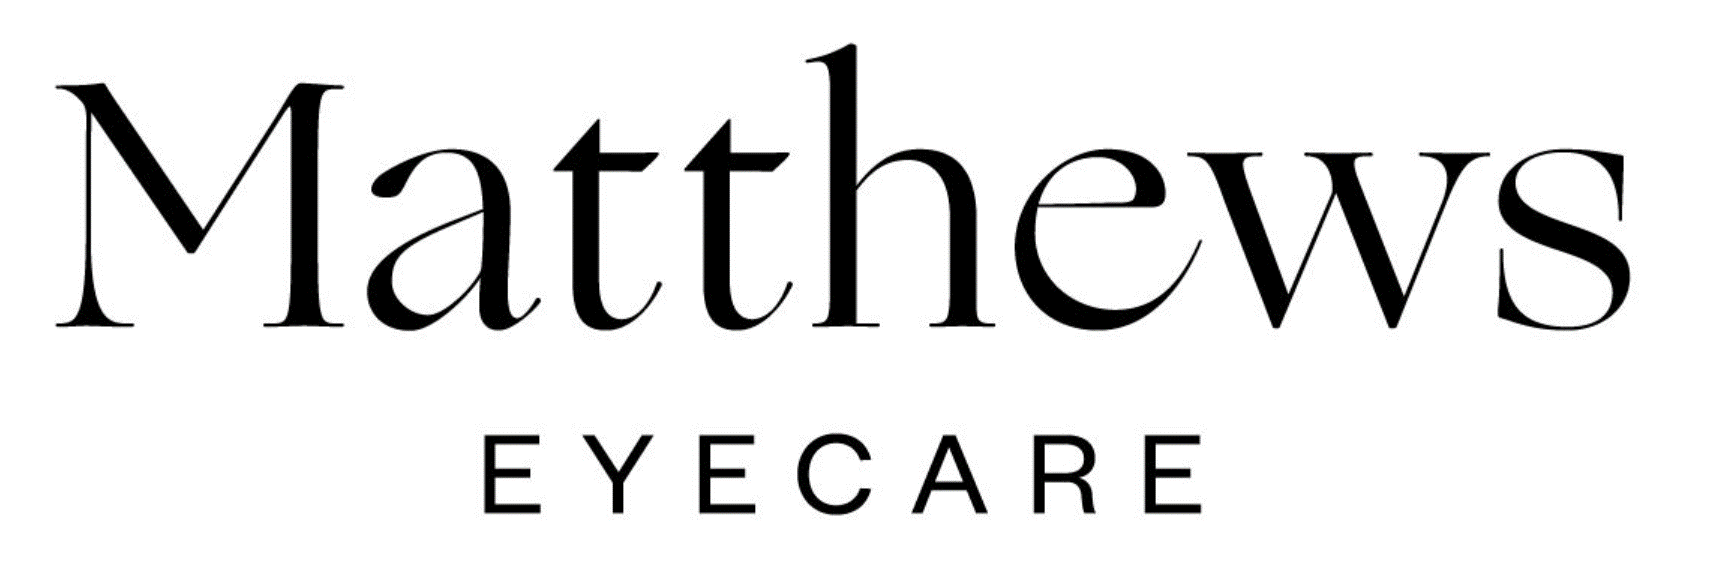 matthews-eyecare.png